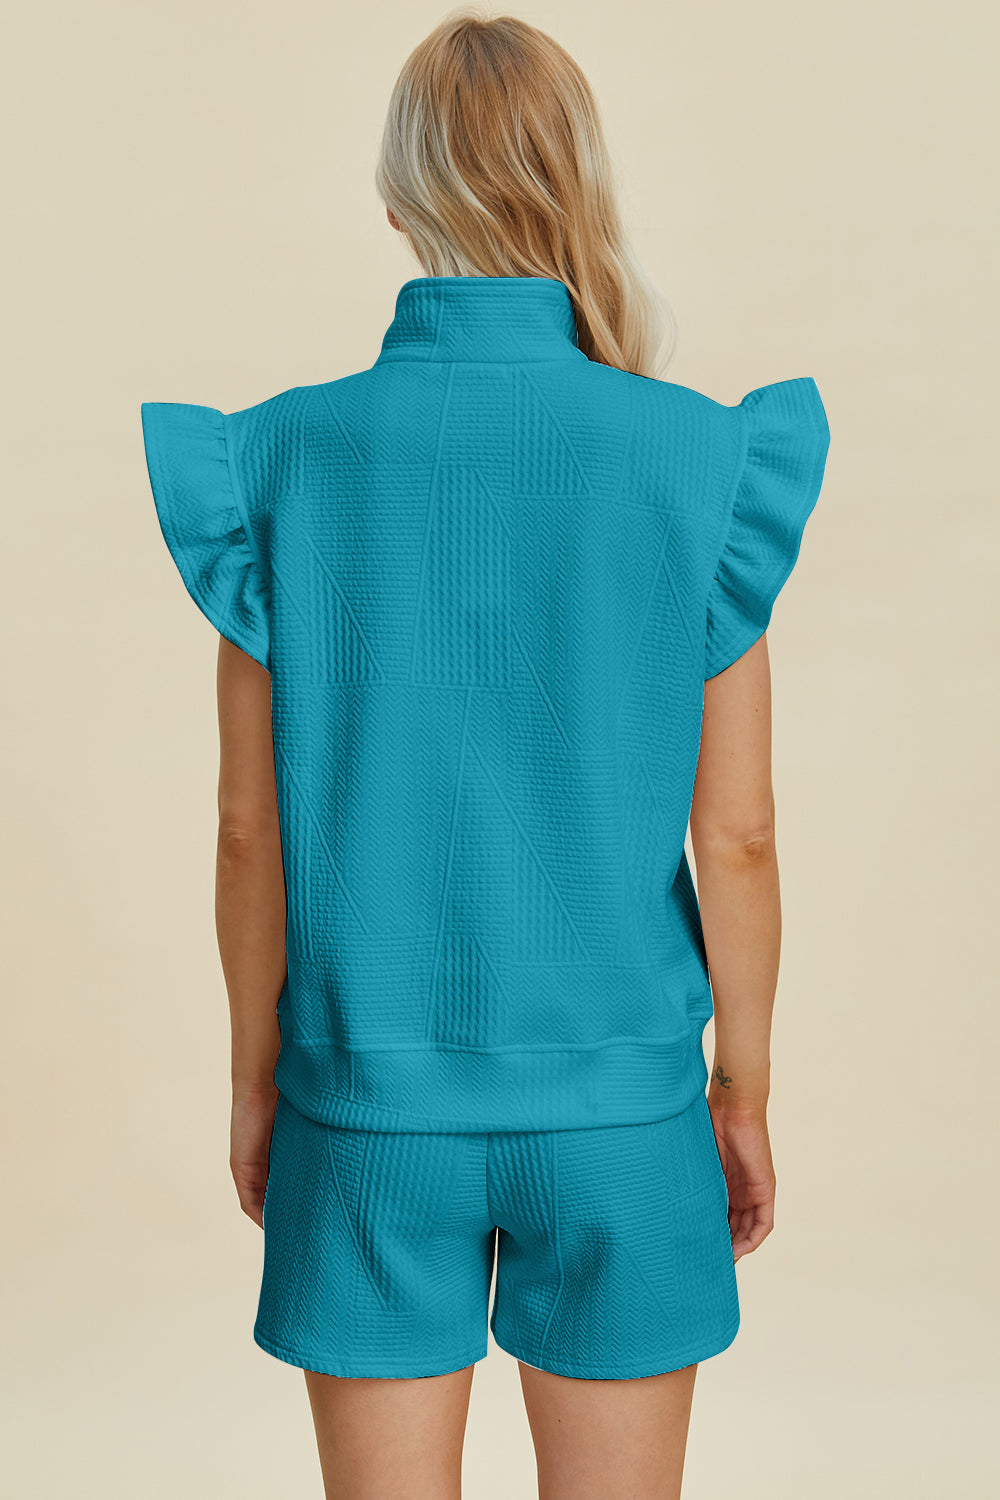 TEEK - Ruffled Textured Sleeve Top Shorts Set SET TEEK Trend   